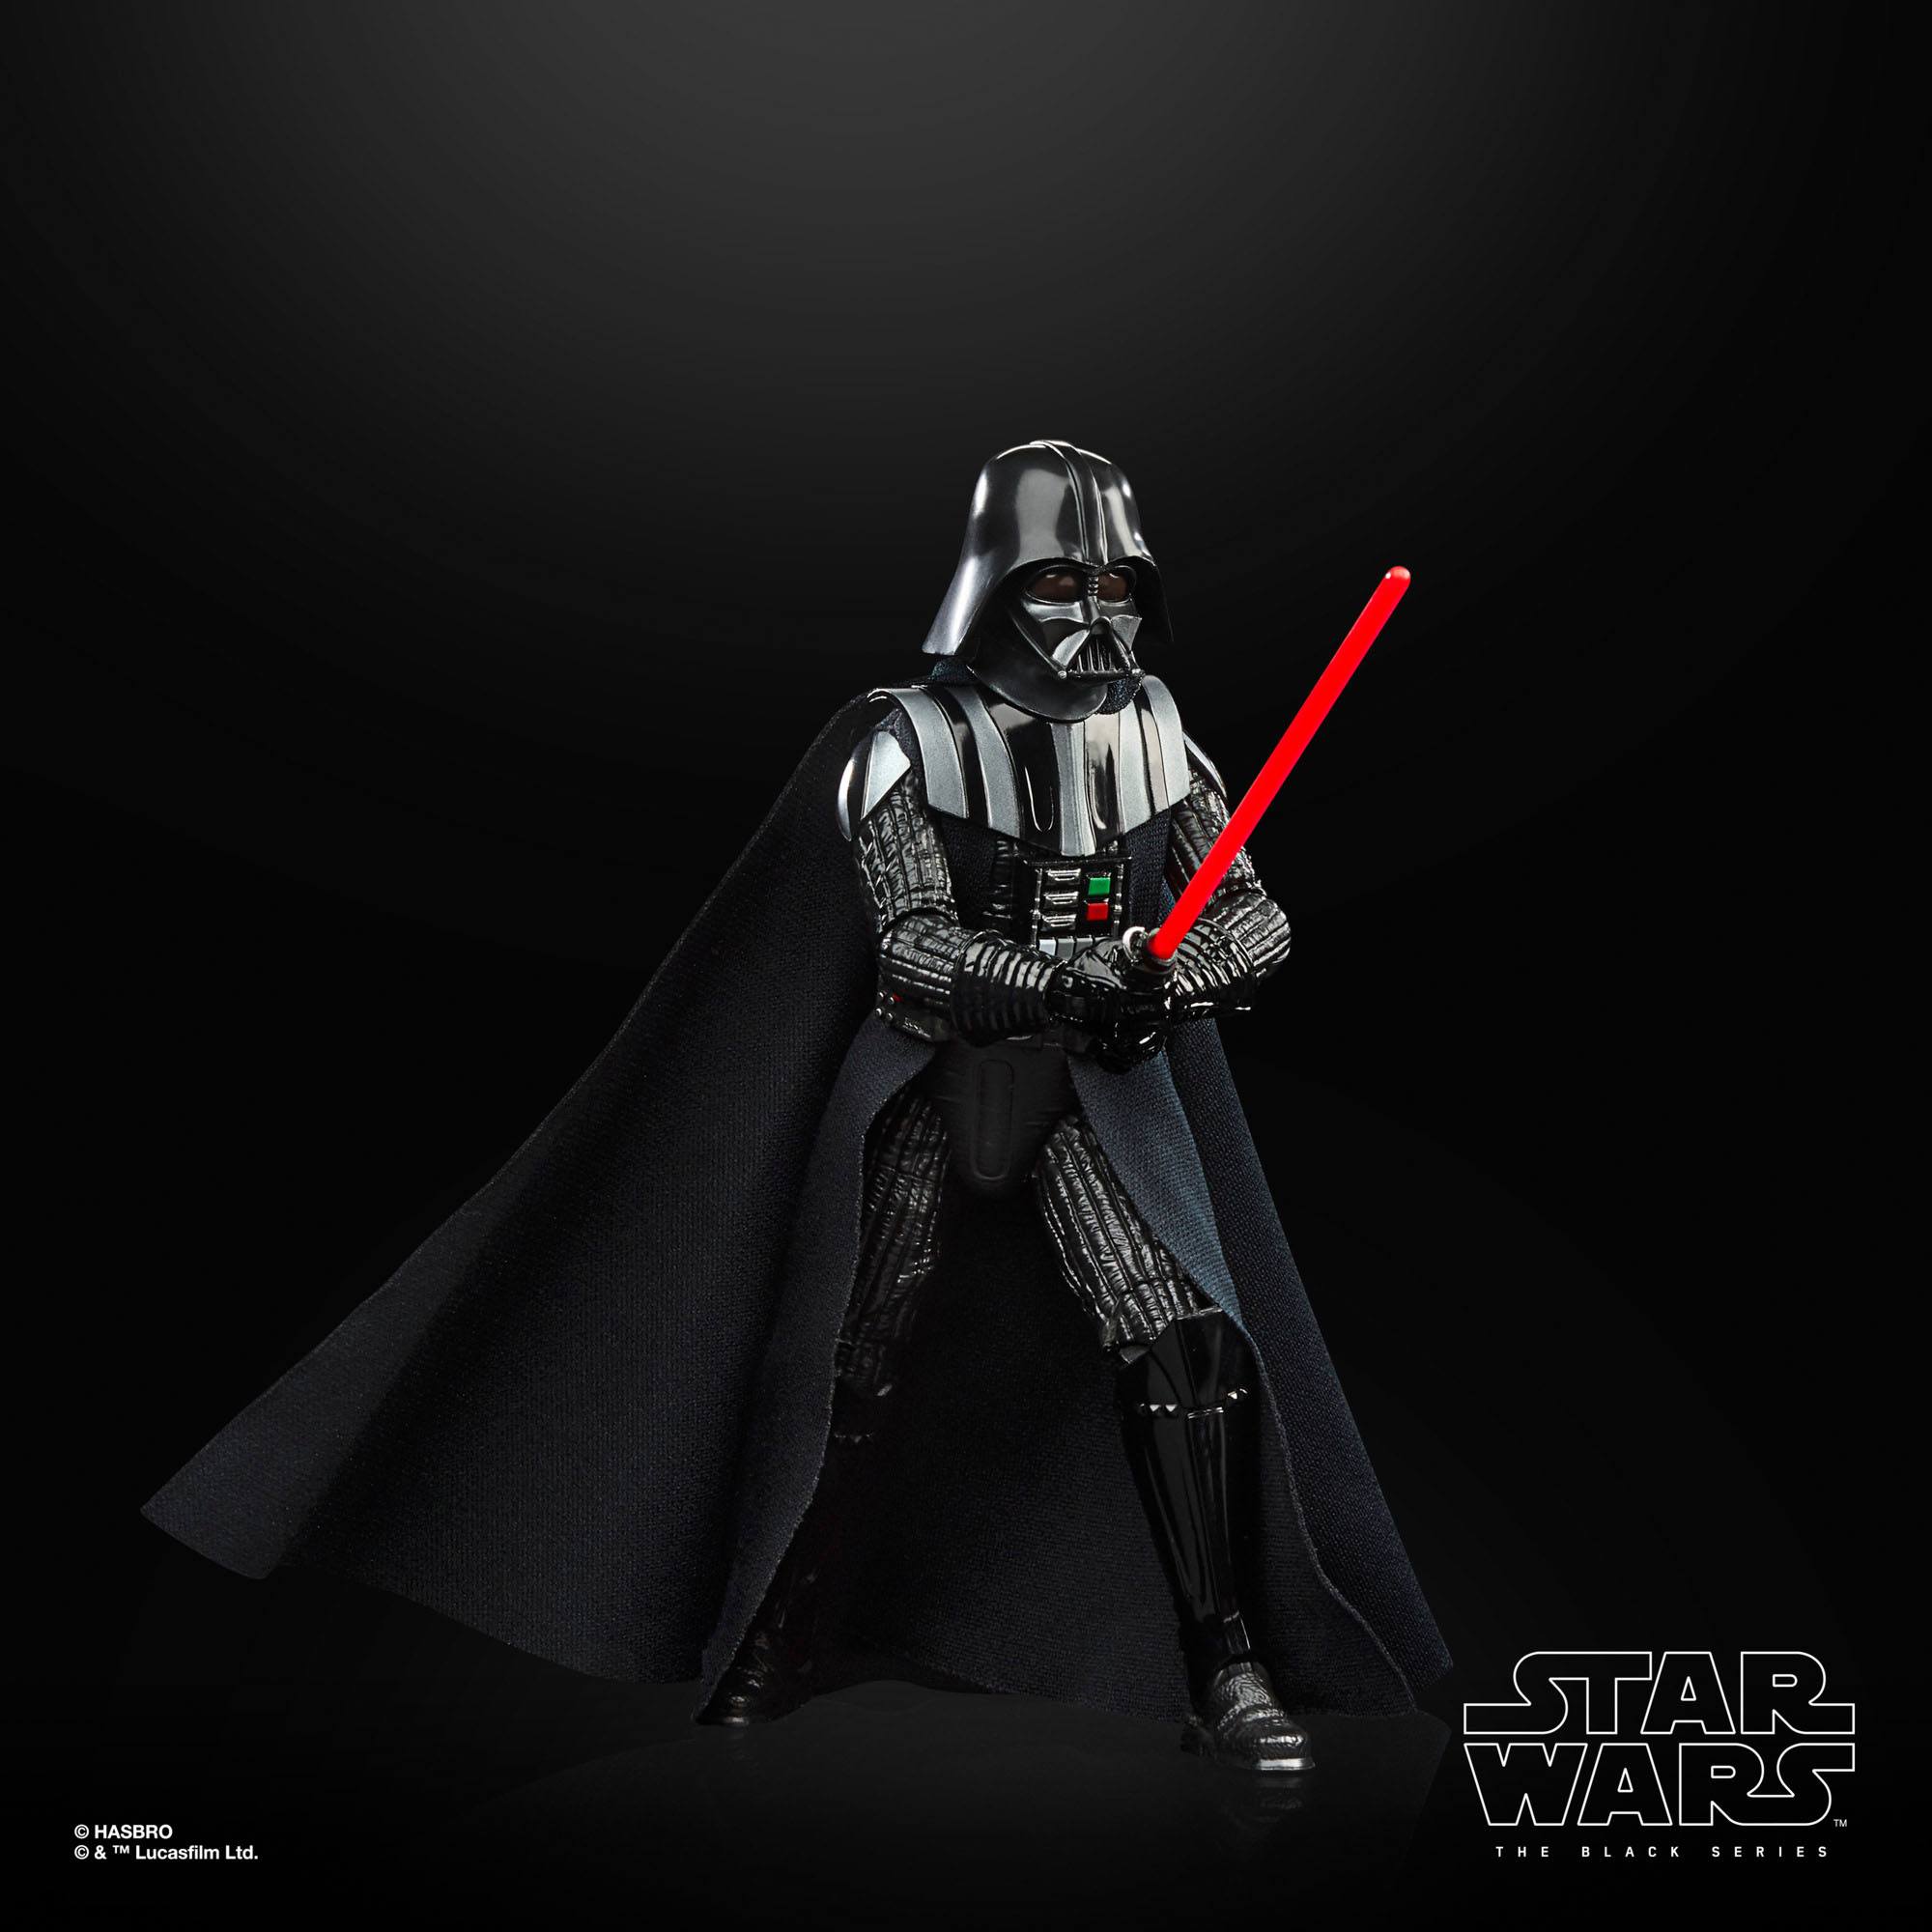 Star Wars The Black Series Darth Vader F43595L00 5010994148300